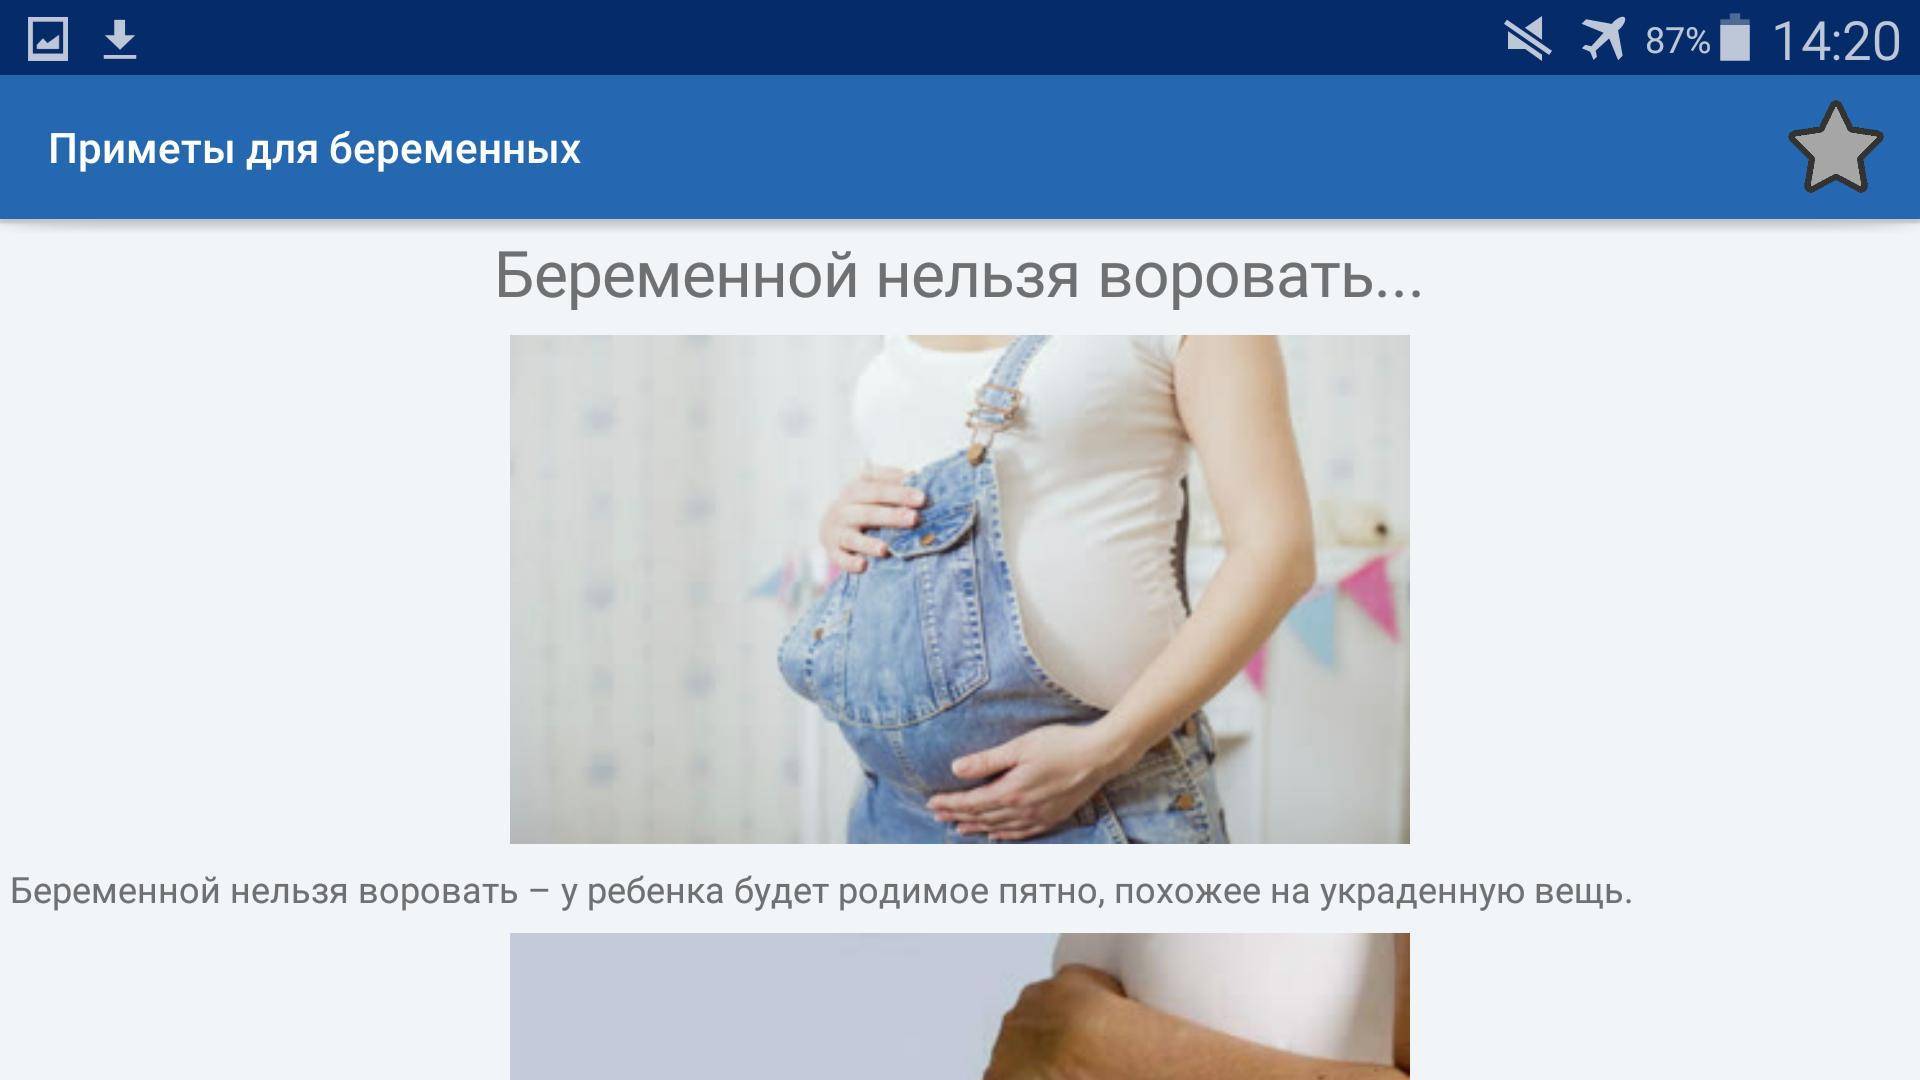 Приметы для беременных. можно ли трогать живот беременной.